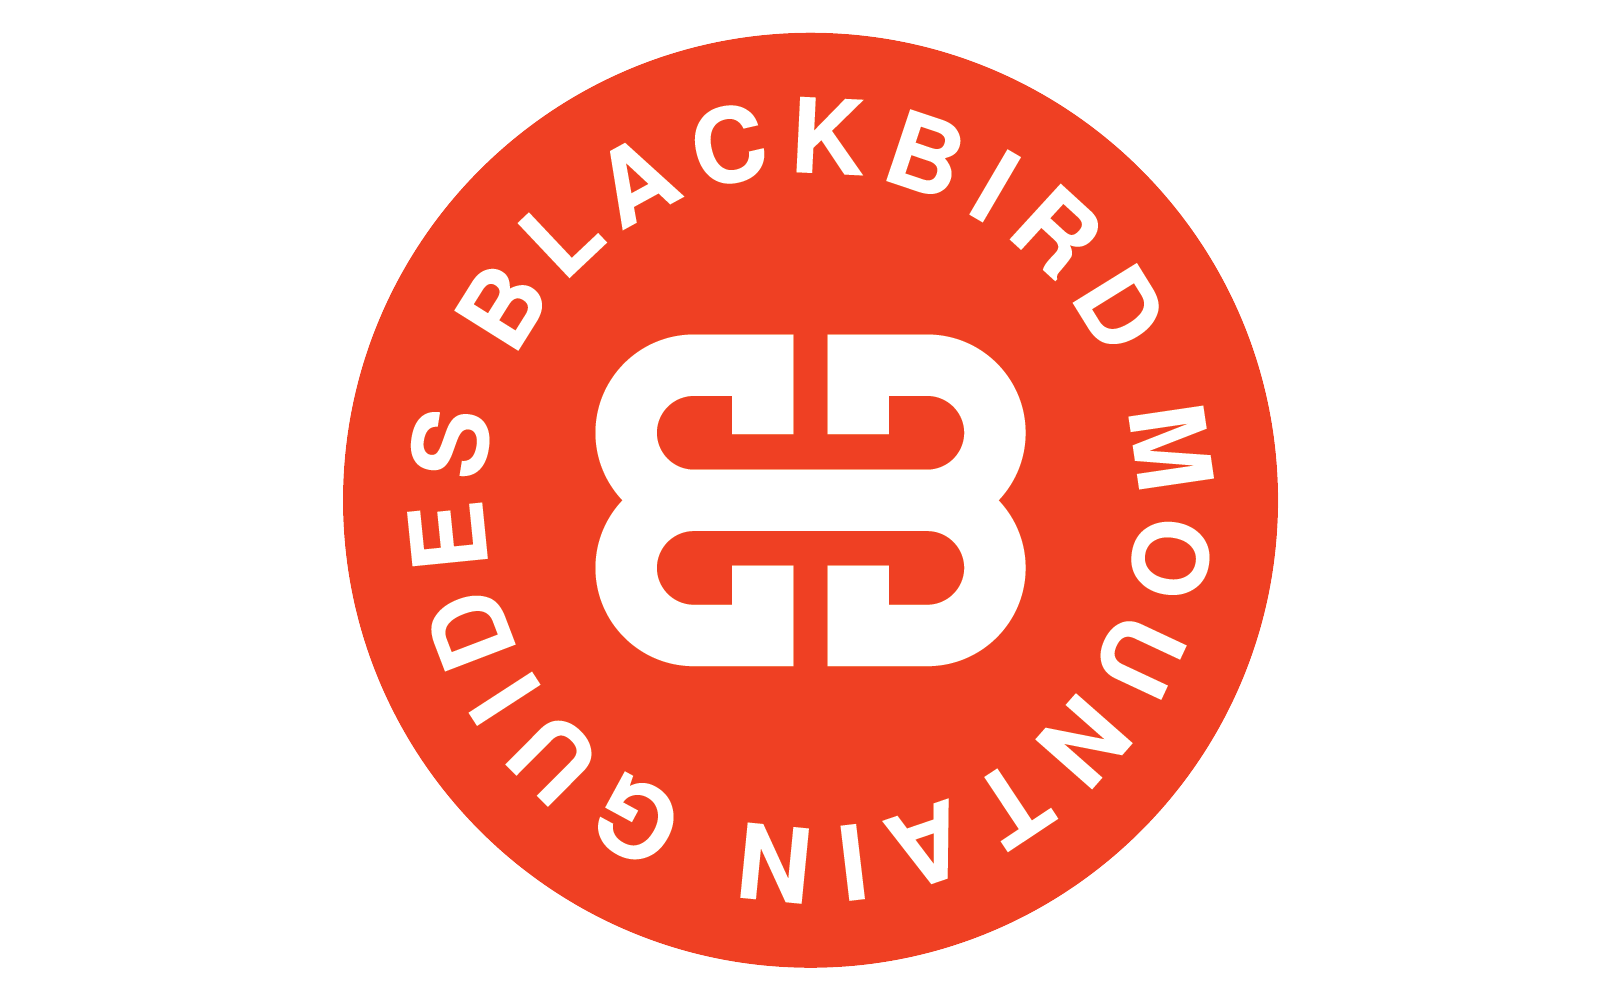 Blackbird Mountain Guides logo.